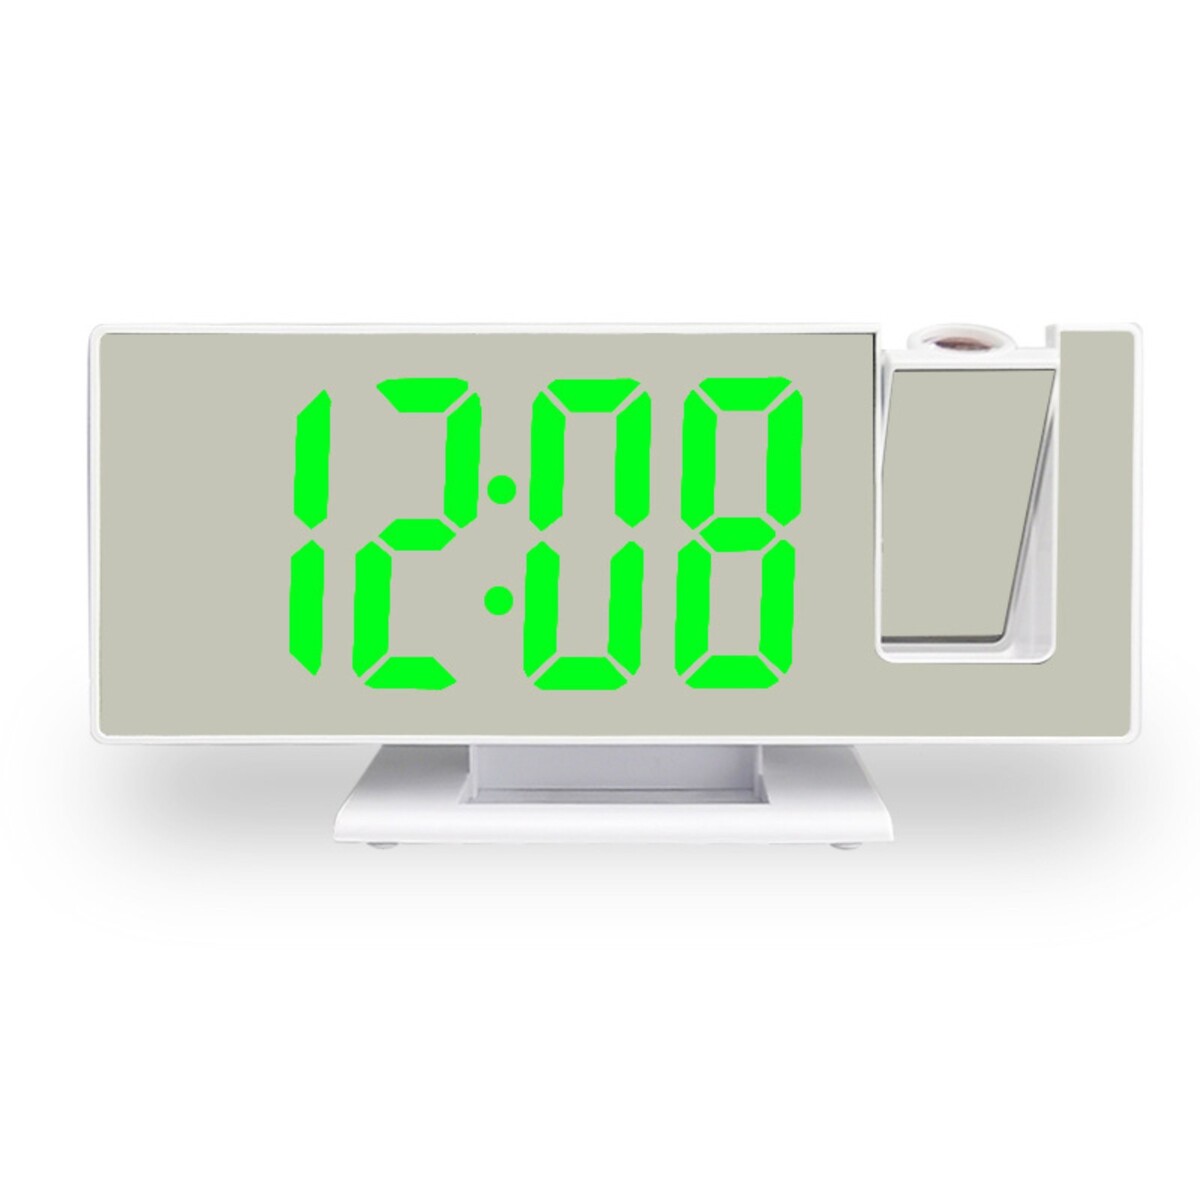 Часы - будильник электронные настольные с проекцией на потолок, термометром, календарем, usb 9197734 часы электронные настольные c термометром гигрометром 7 х 14 5 х 4 см